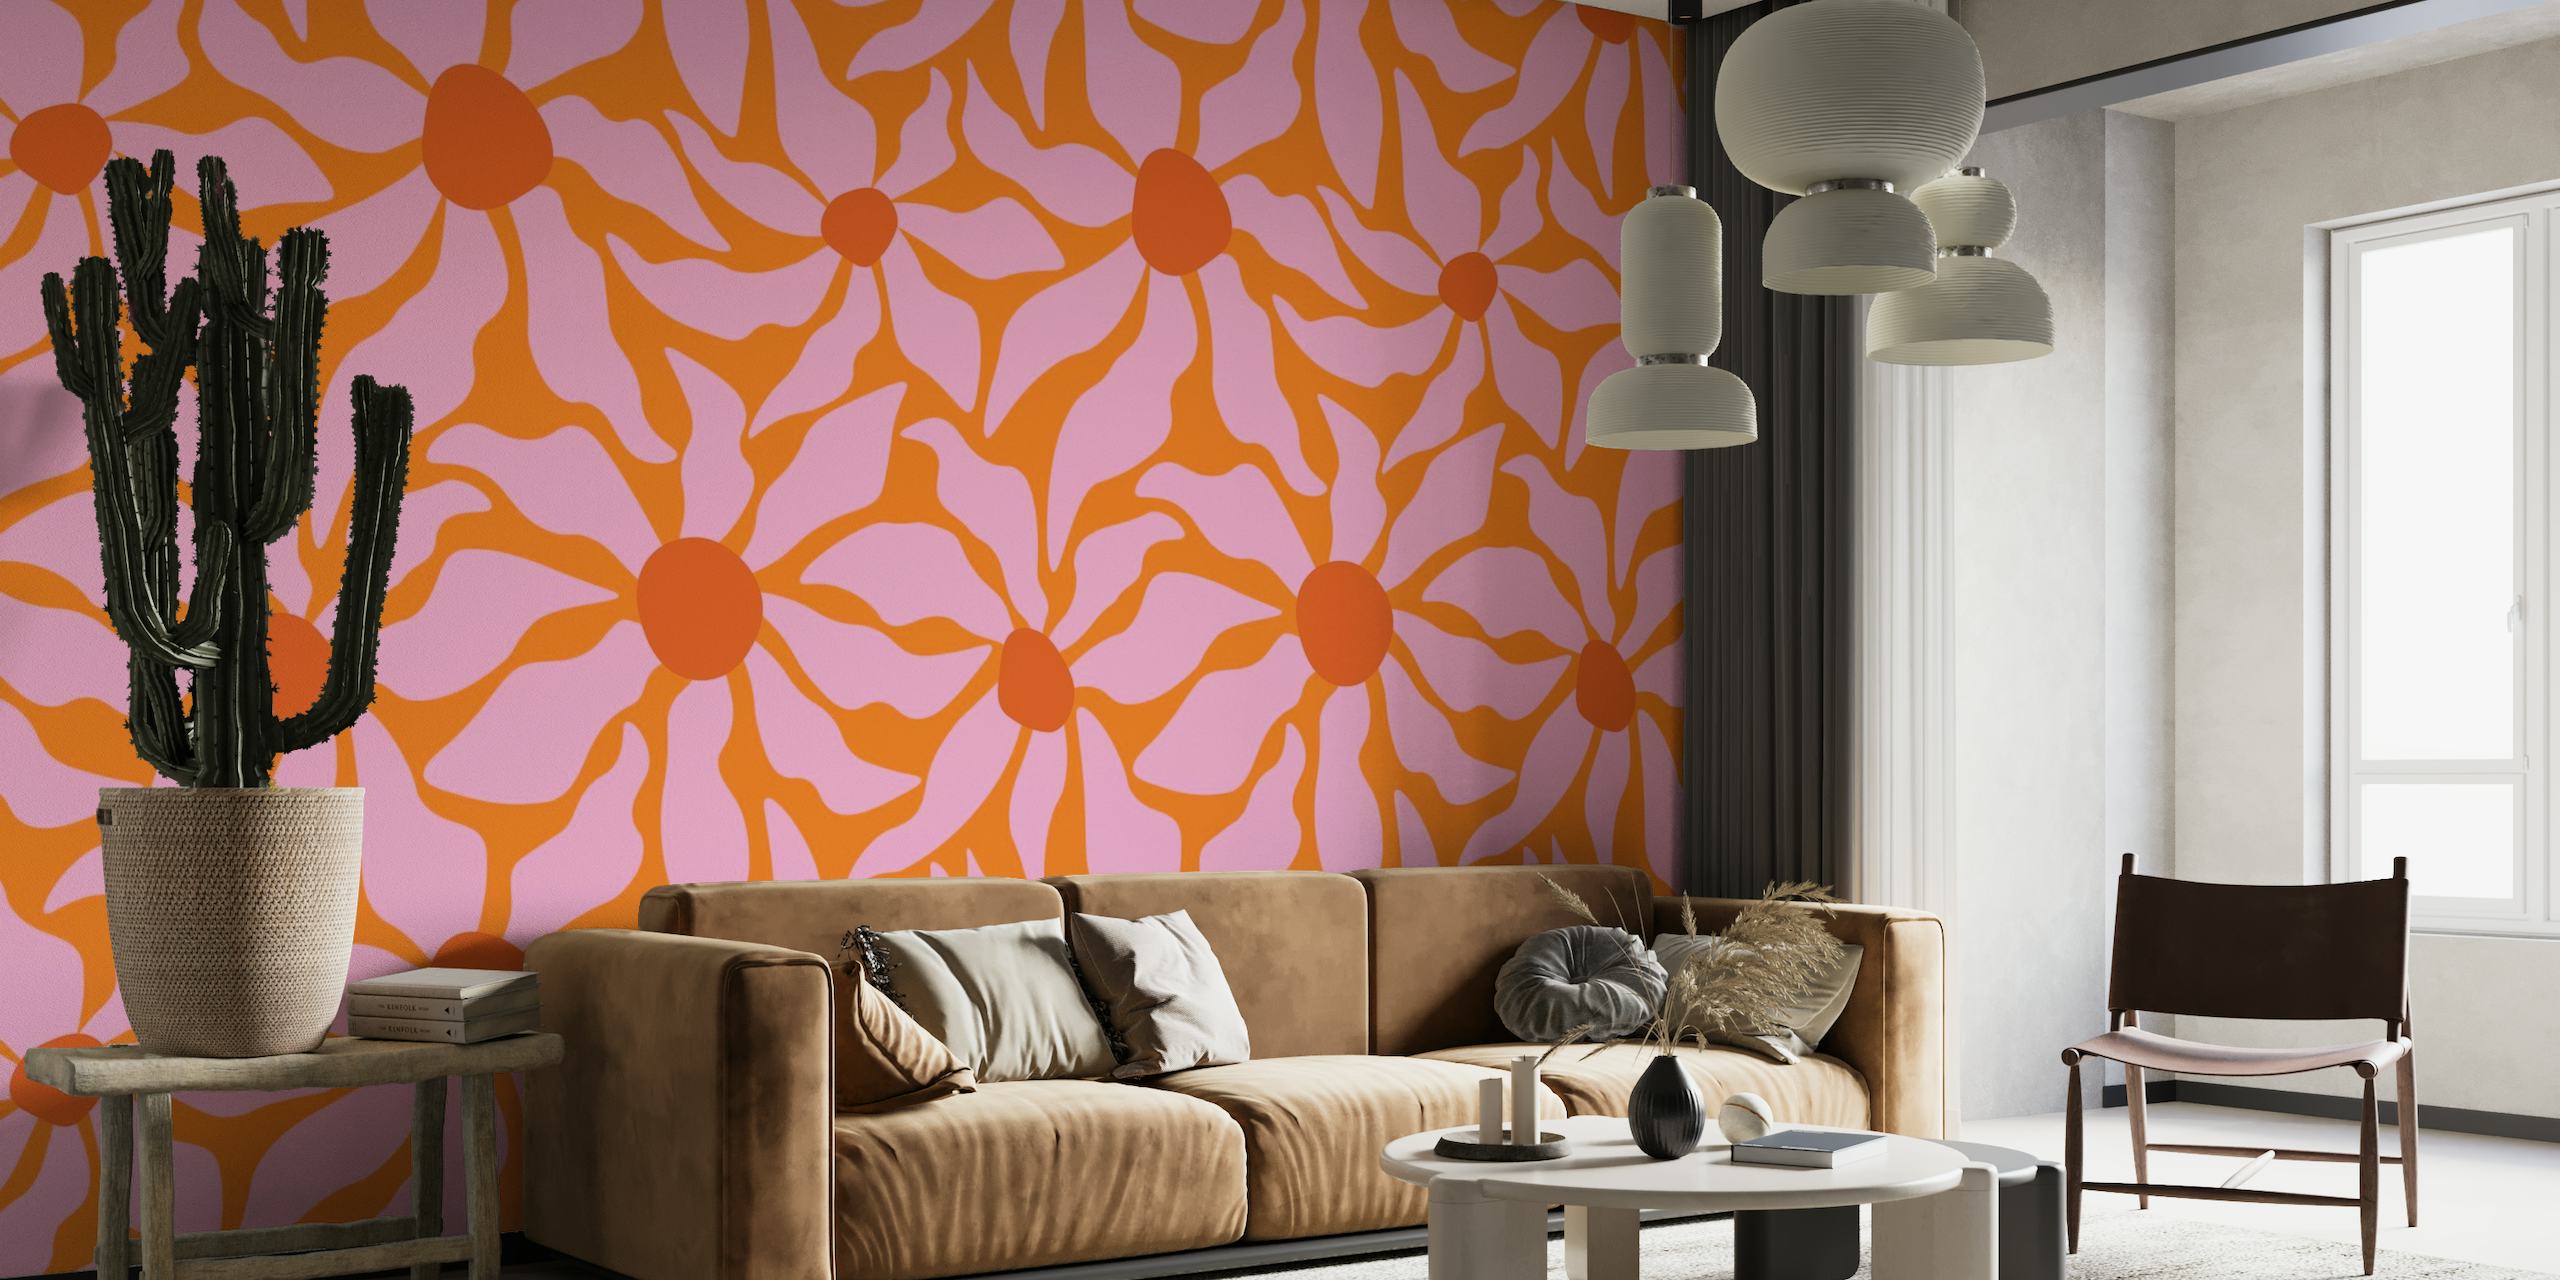 Mural de pared floral abstracto en naranja y rosa vibrante con un diseño de ranura retro